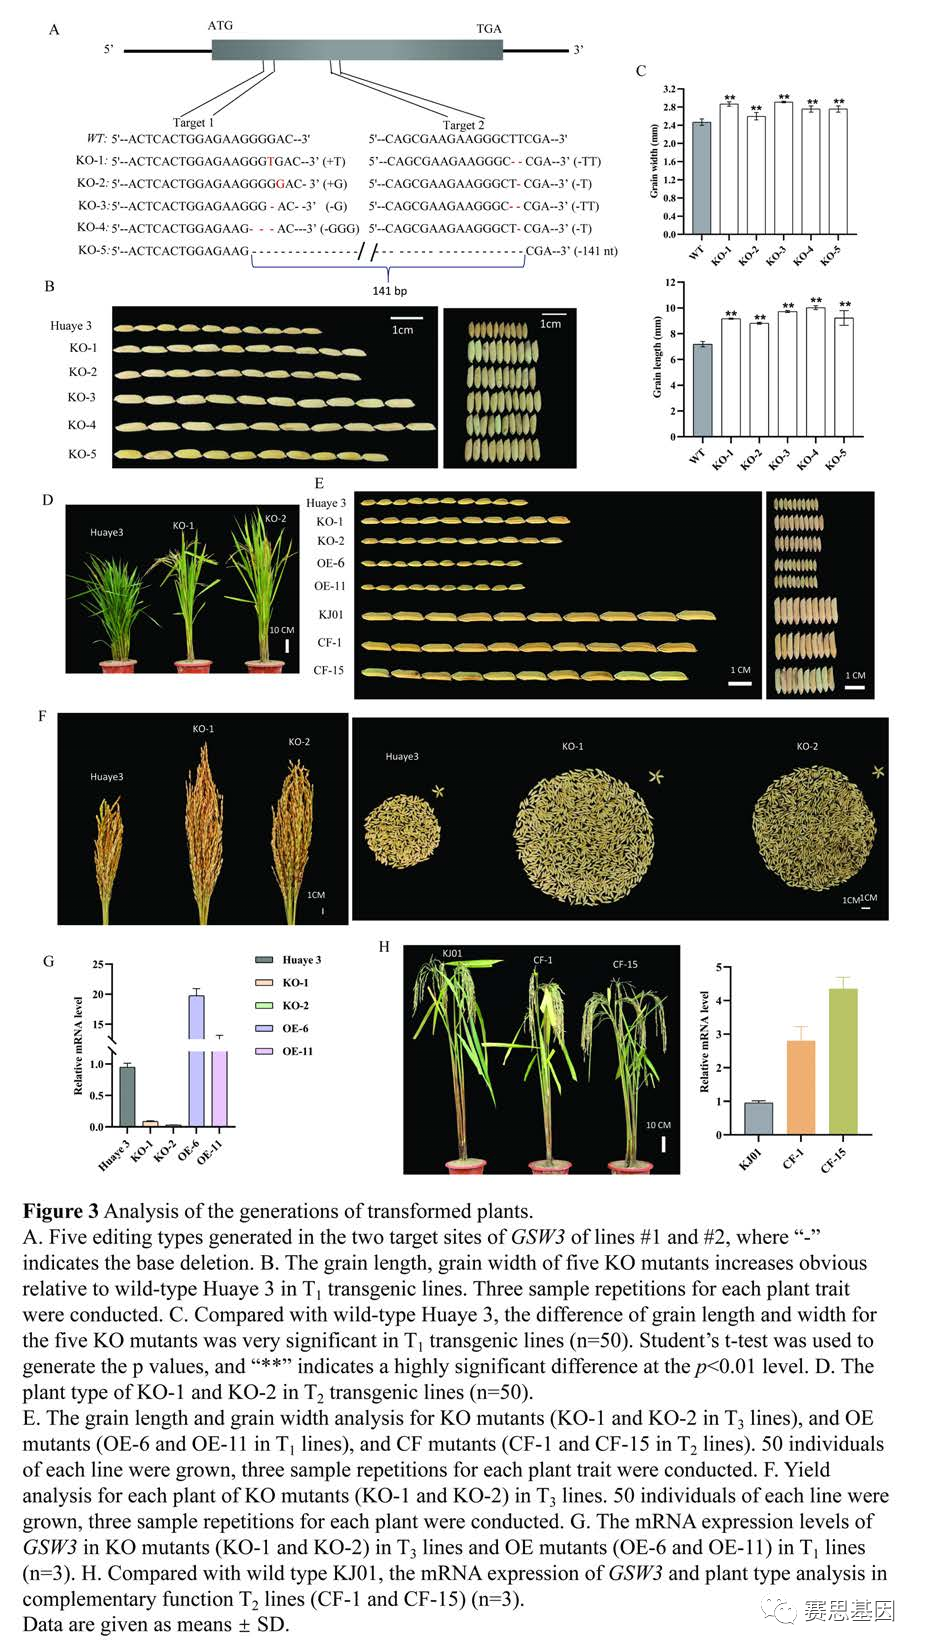 【plant physiol】野生稻基因gsw3的自然等位基因变异可调节水稻籽粒